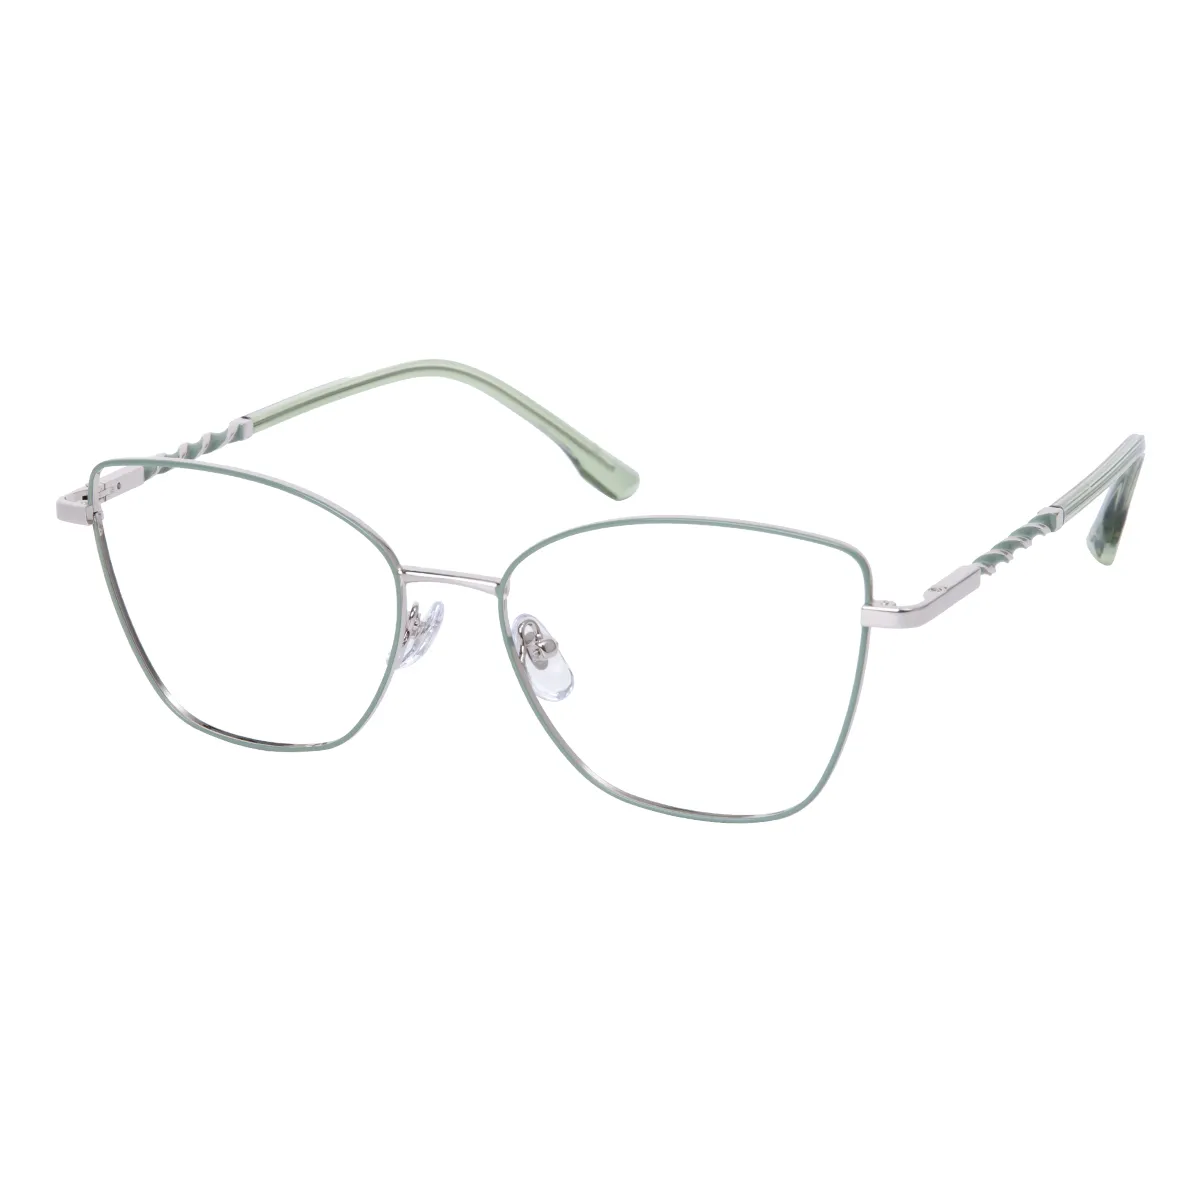 Sable - Square Light Green Glasses for Women